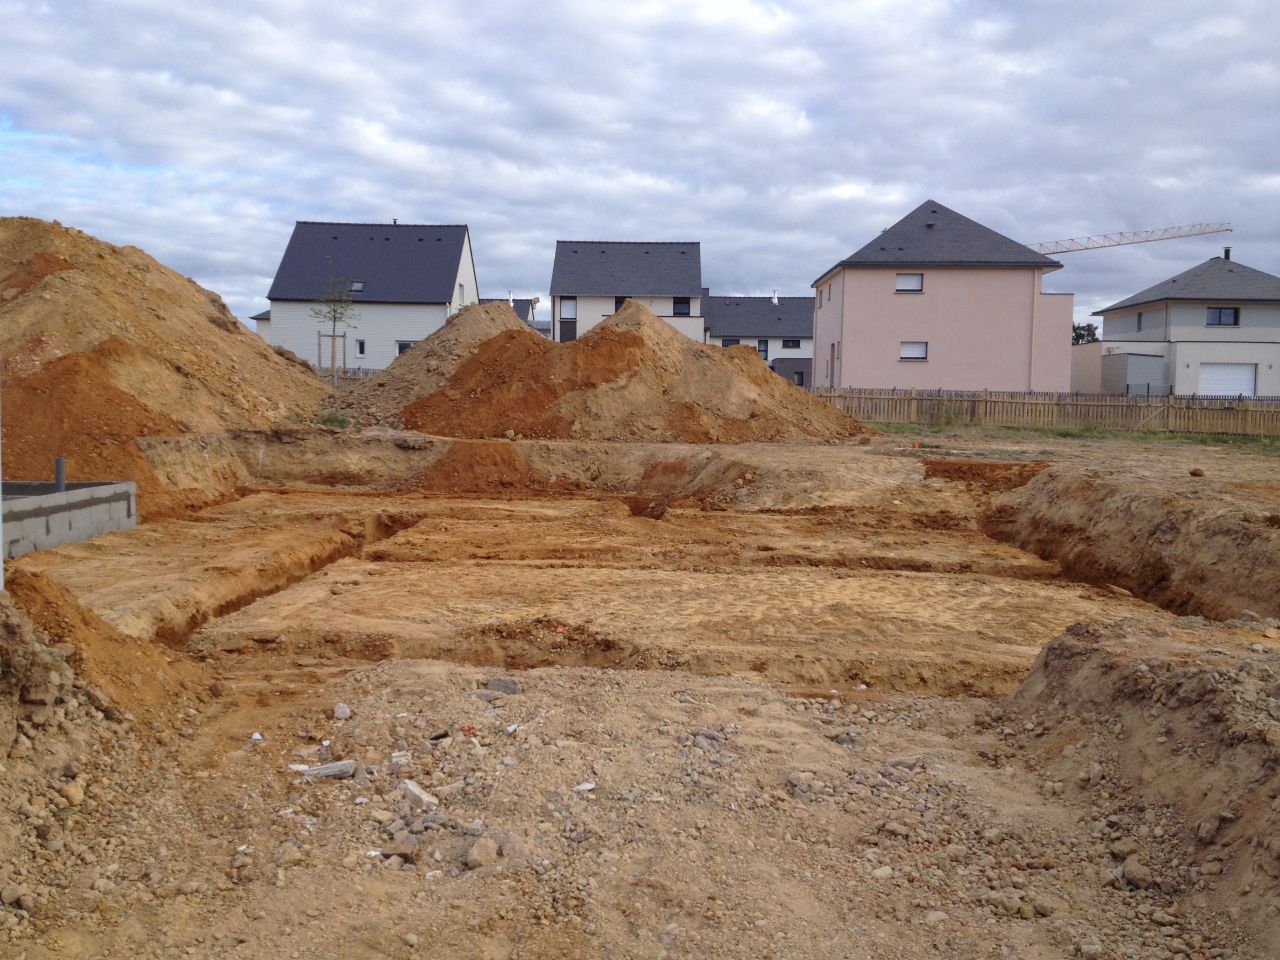 Le sol est creus prt  couler les fondations.
<br />
Deux tas de terre: la mauvaise a vacuer et la bonne a garder pour la fin de chantier.